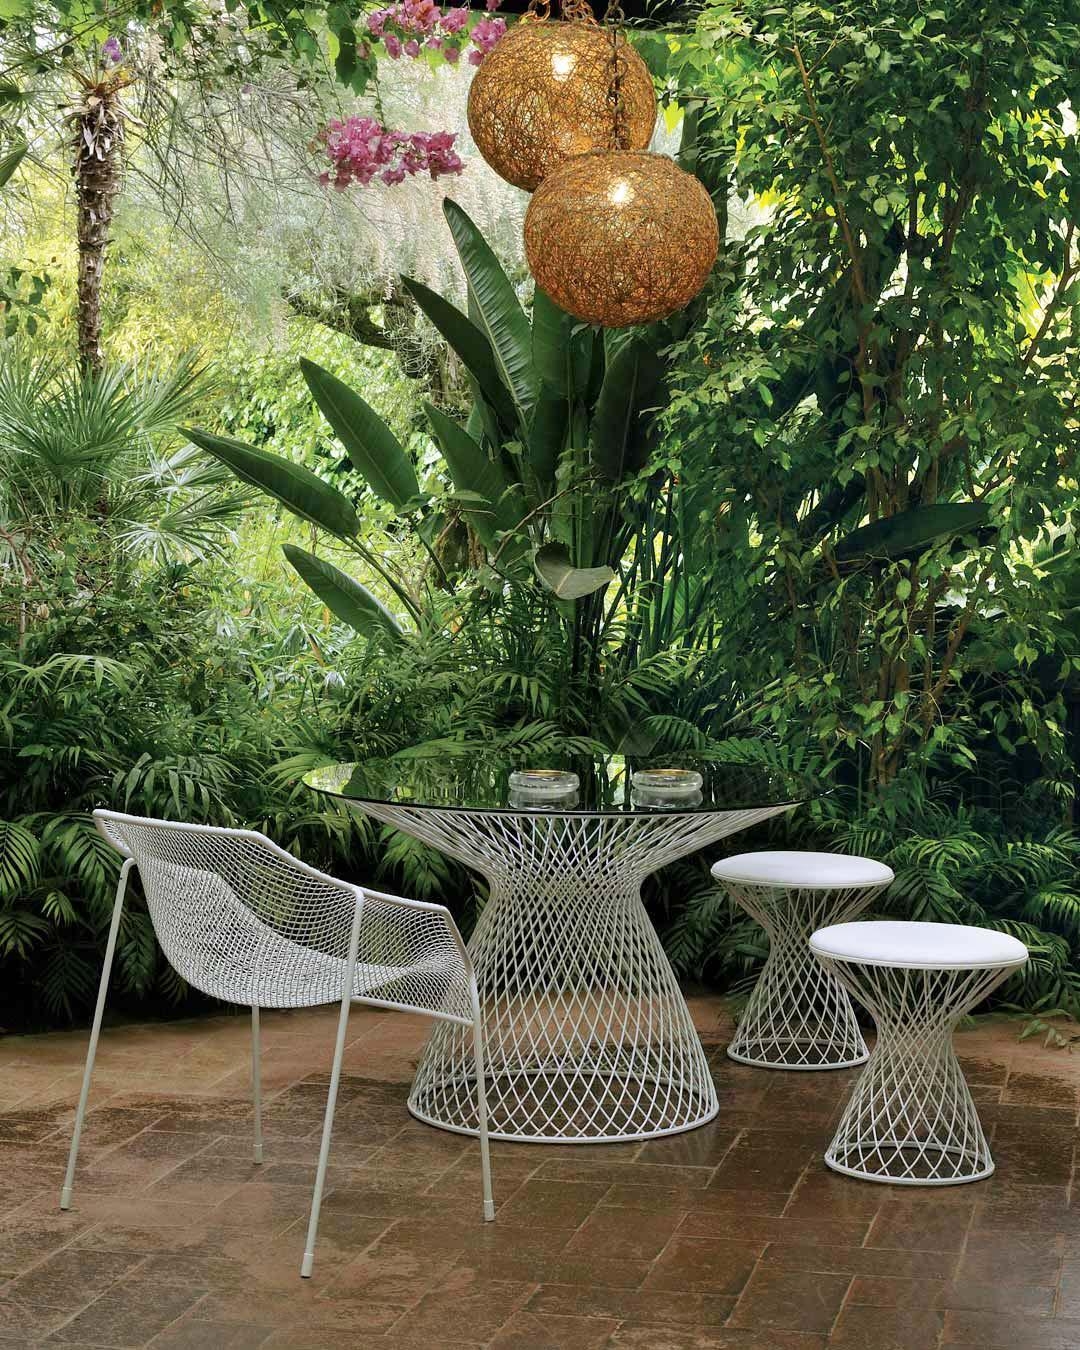 Luftig-leichte Gartenmöbel für euren entspannten Tag im Freien
#gartendeko	#gartenzeit
